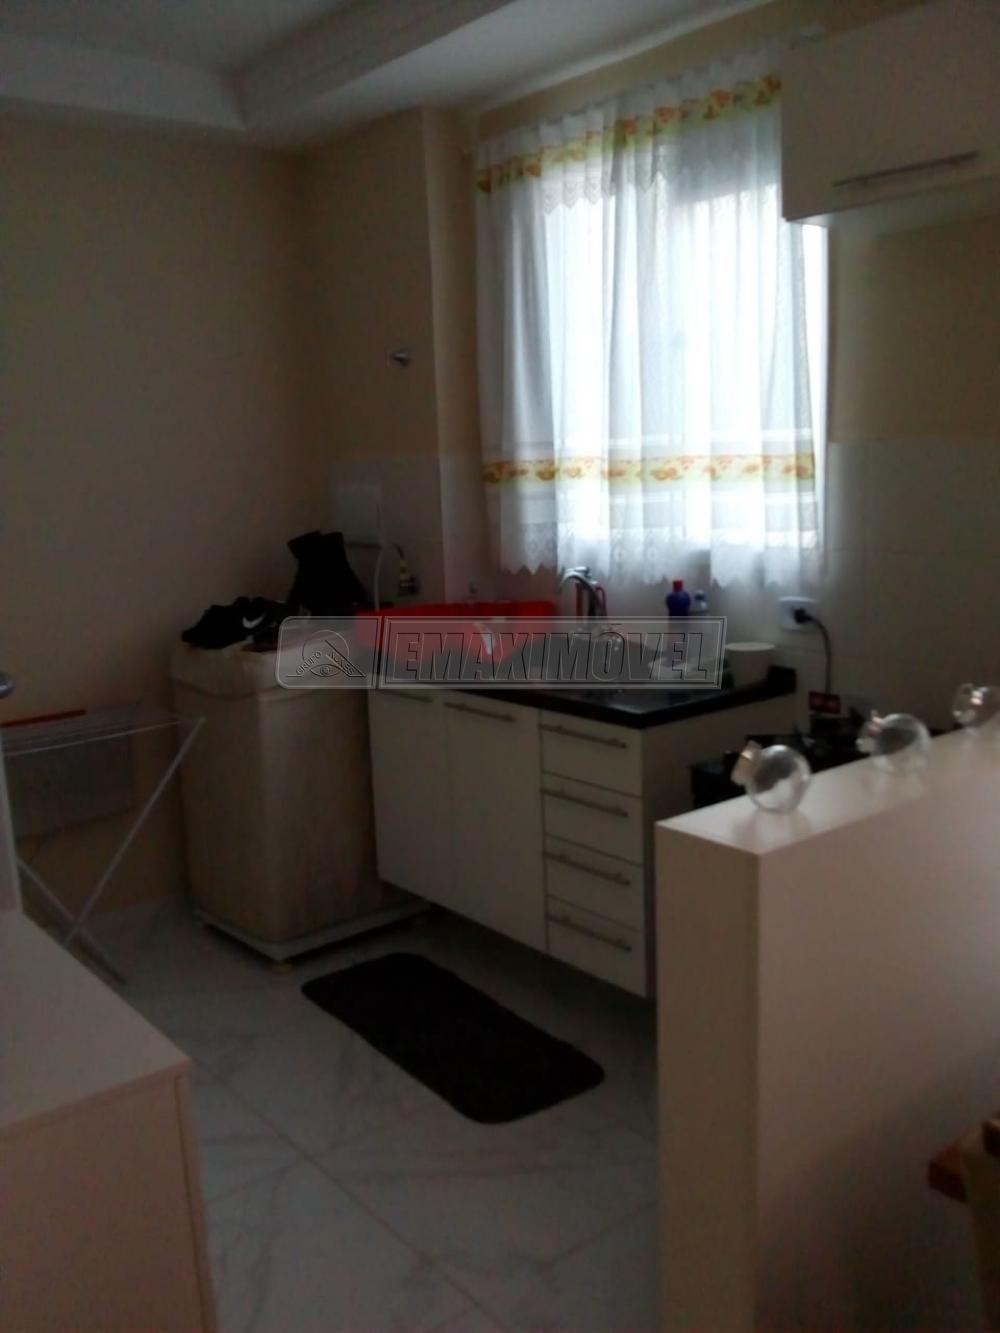 Alugar Apartamento / Padrão em Sorocaba R$ 800,00 - Foto 8